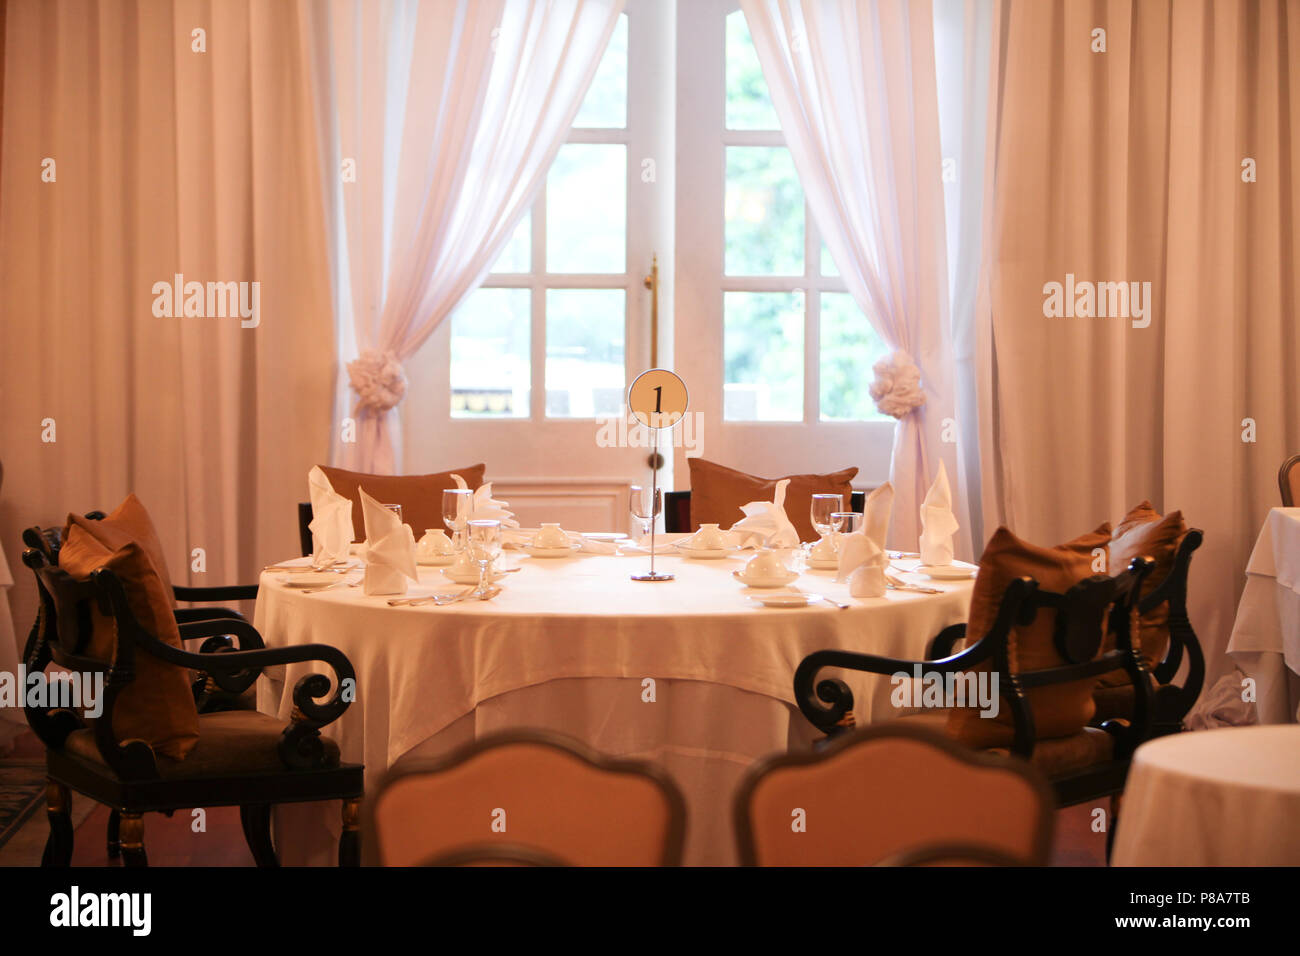 Nahaufnahme einer großen runden nummerierten Tisch vor ein französisches Fenster in einer festlichen kolonialen Raum mit weißen Vorhängen, eine weiße Tischdecke und... Stockfoto